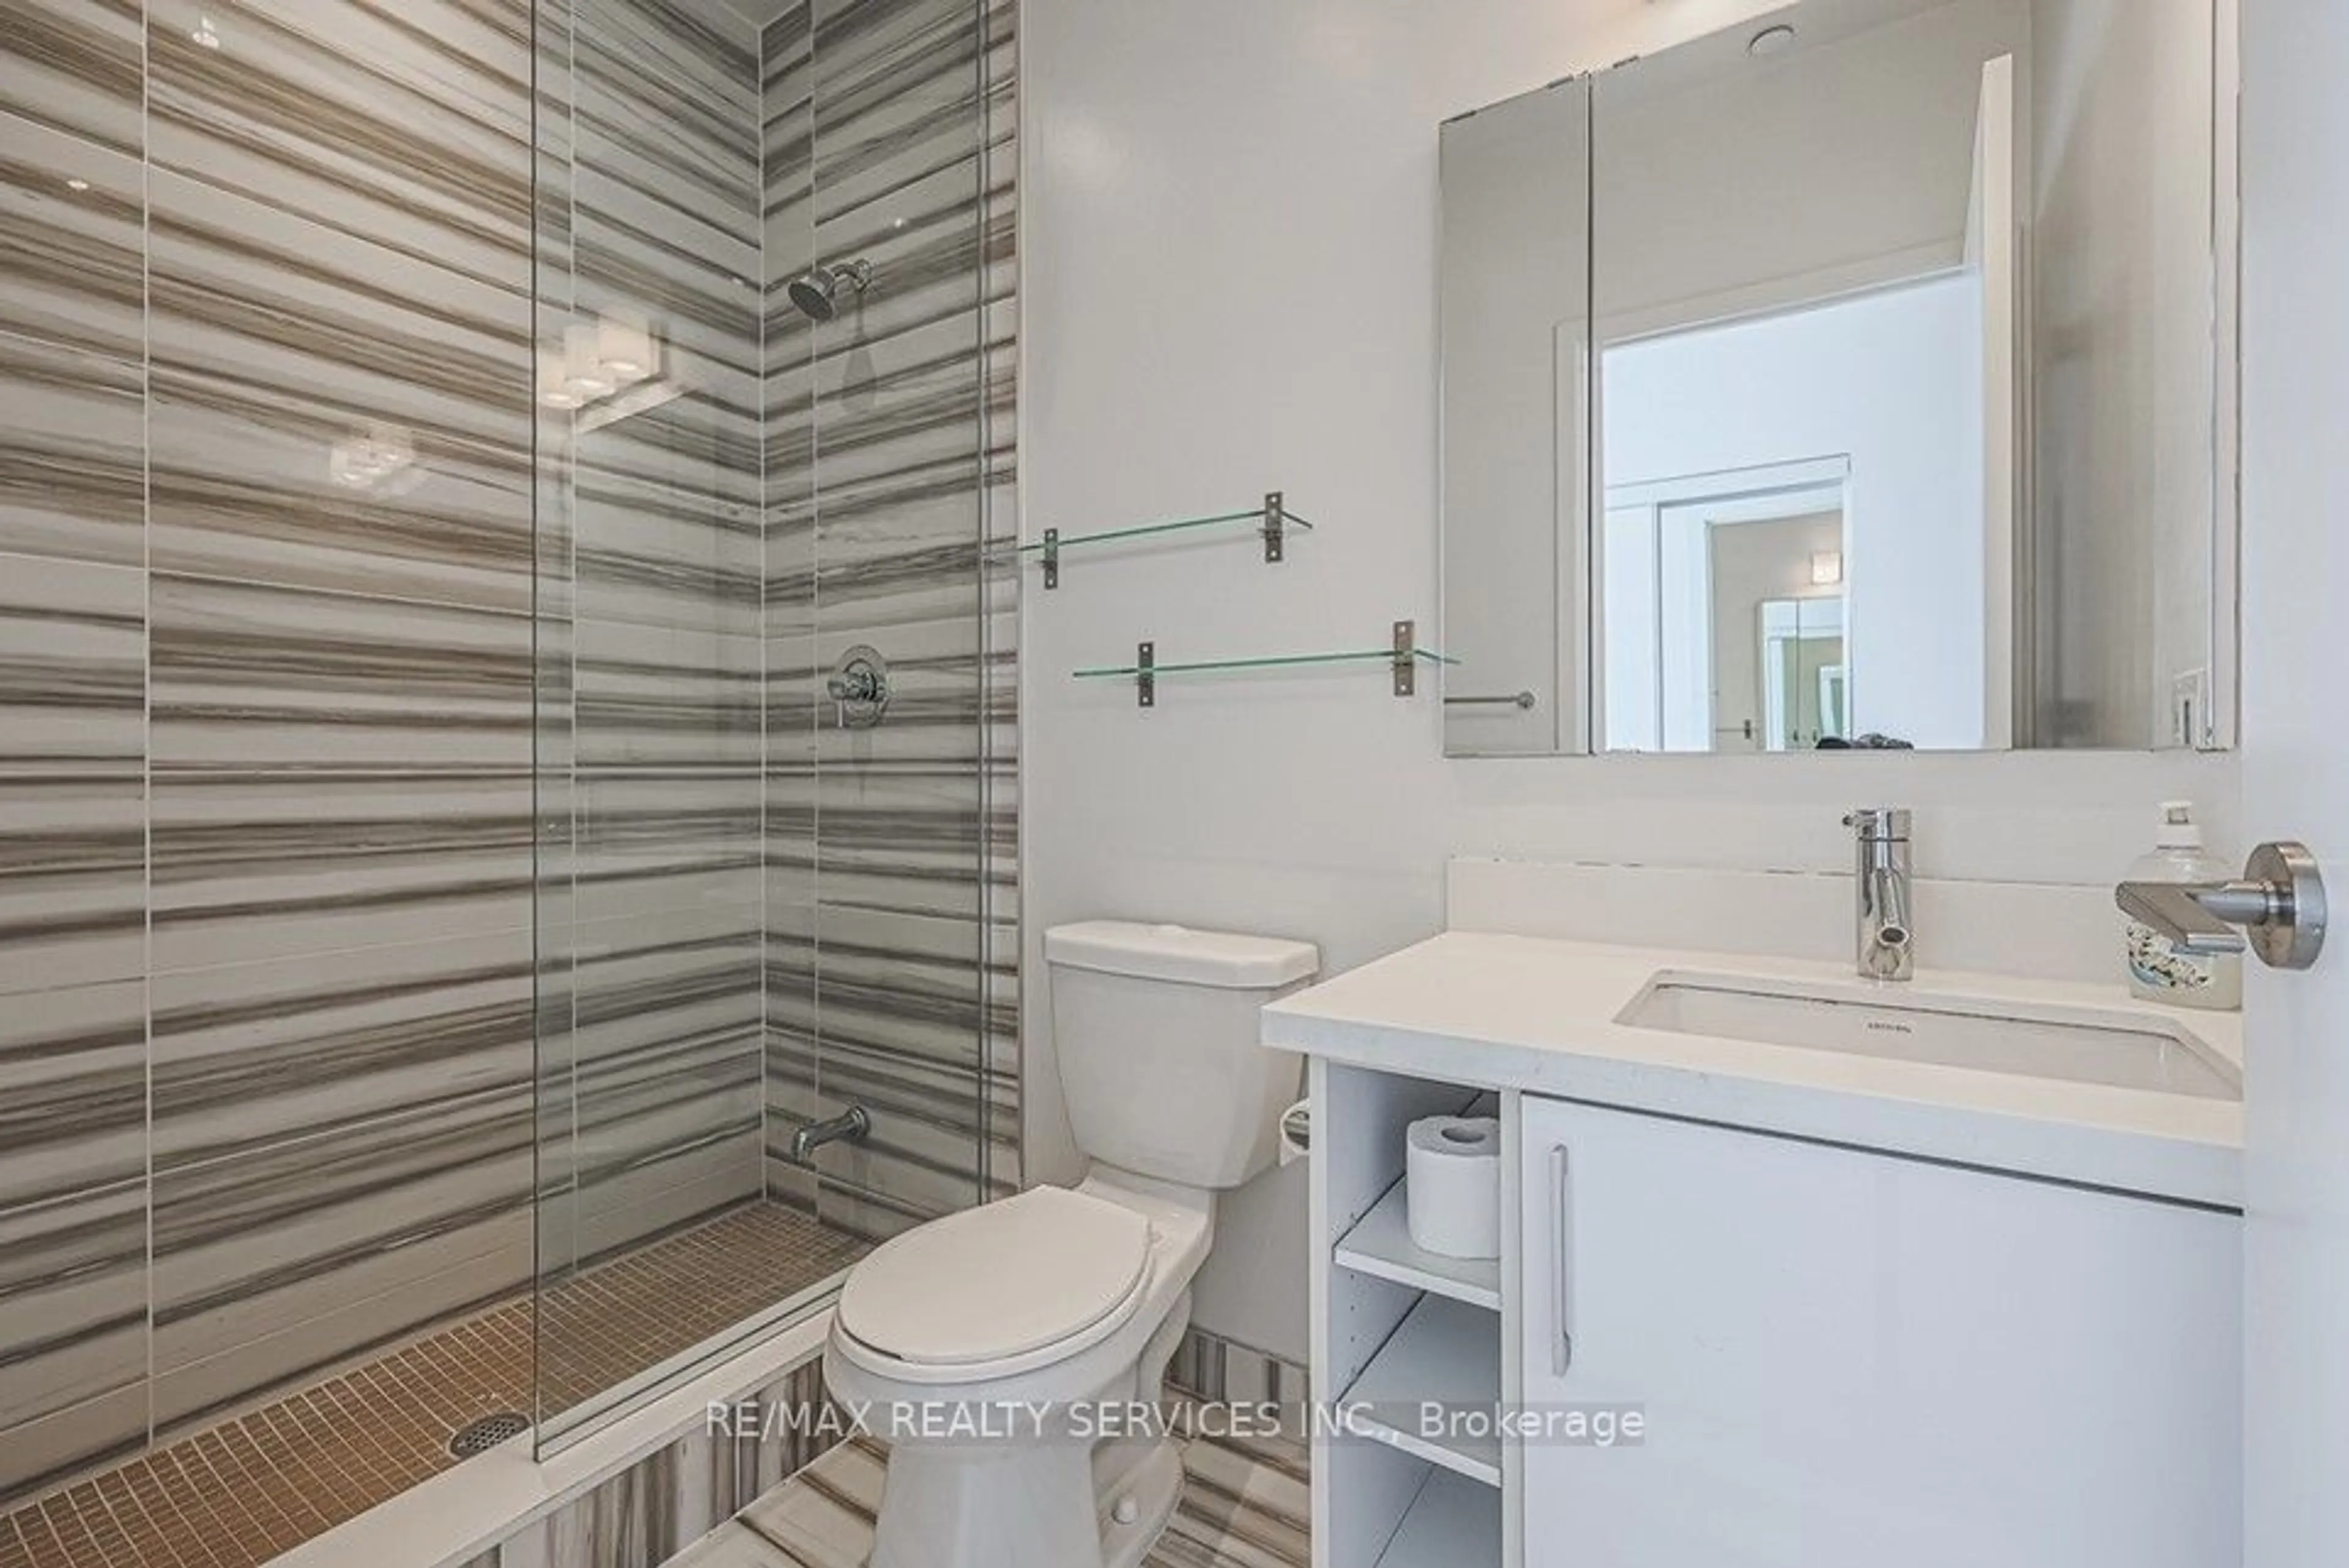 Bathroom for 2220 Lakeshore Blvd #Ph2, Toronto Ontario M8V 0C1